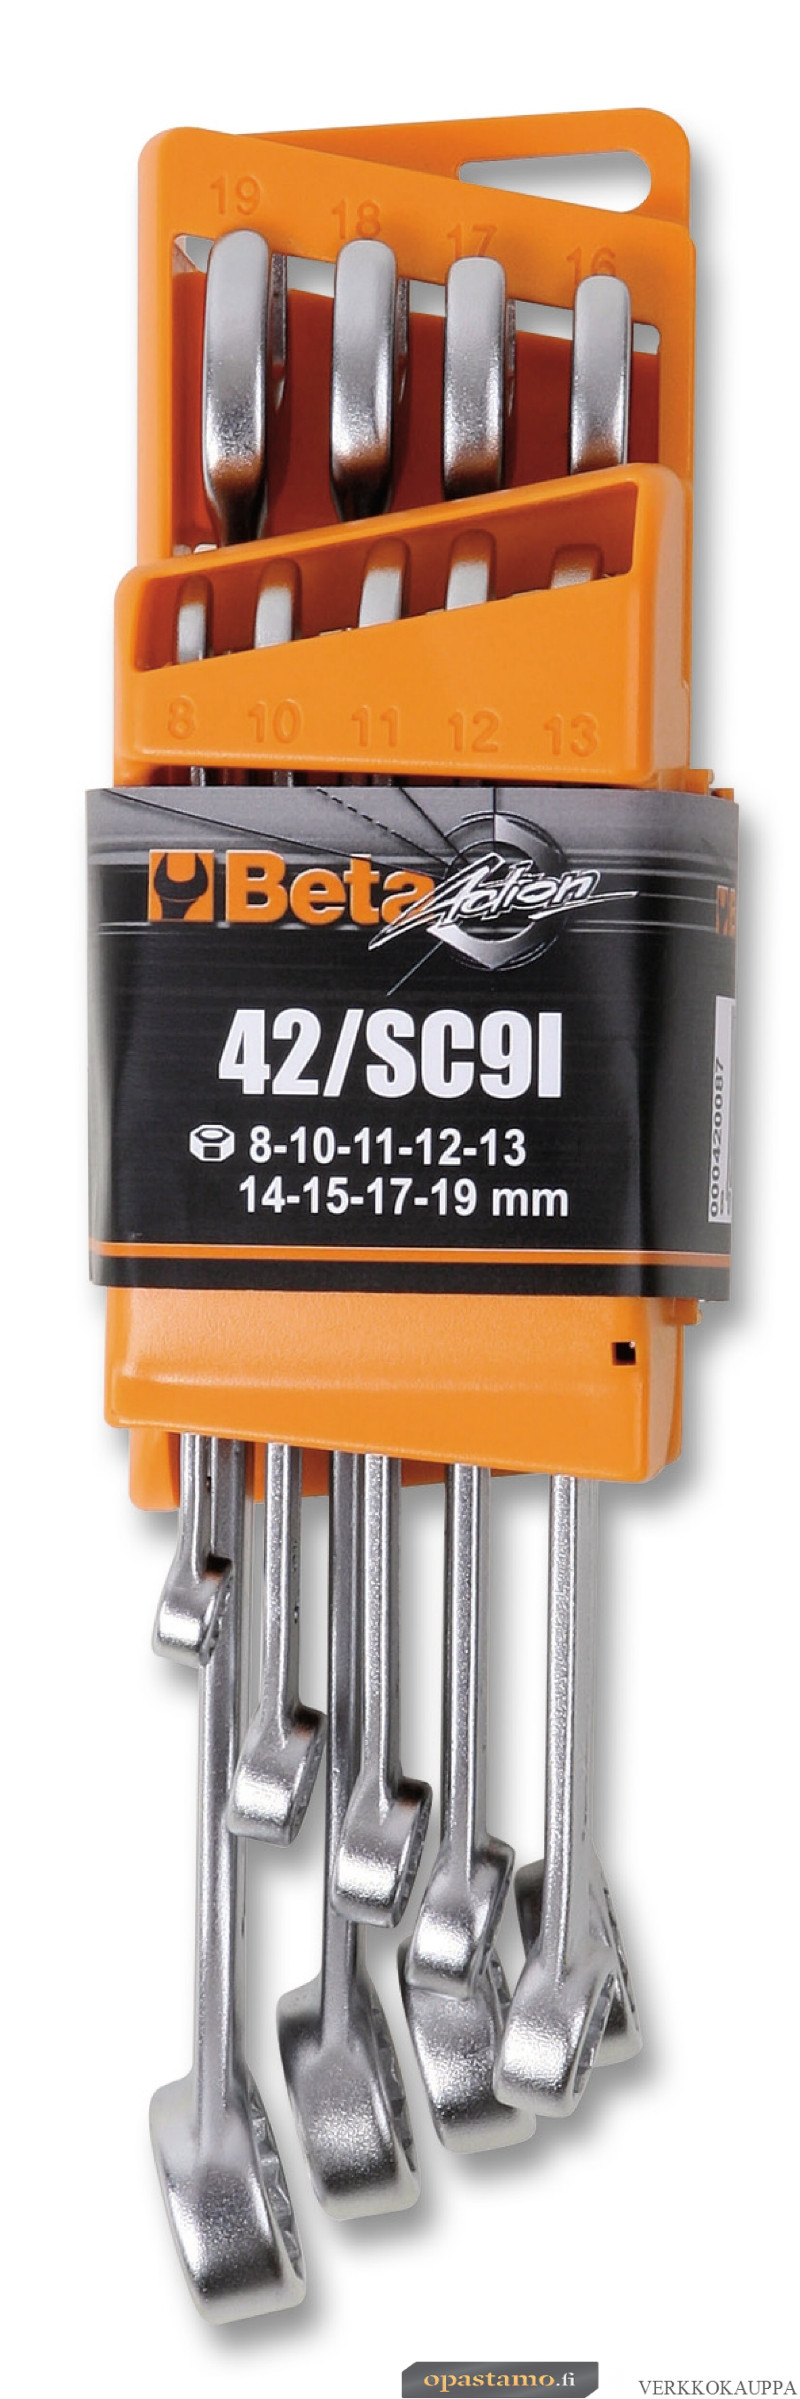 BETA 42/SCV9E tyhjä displei tuotteille 42/SC9E